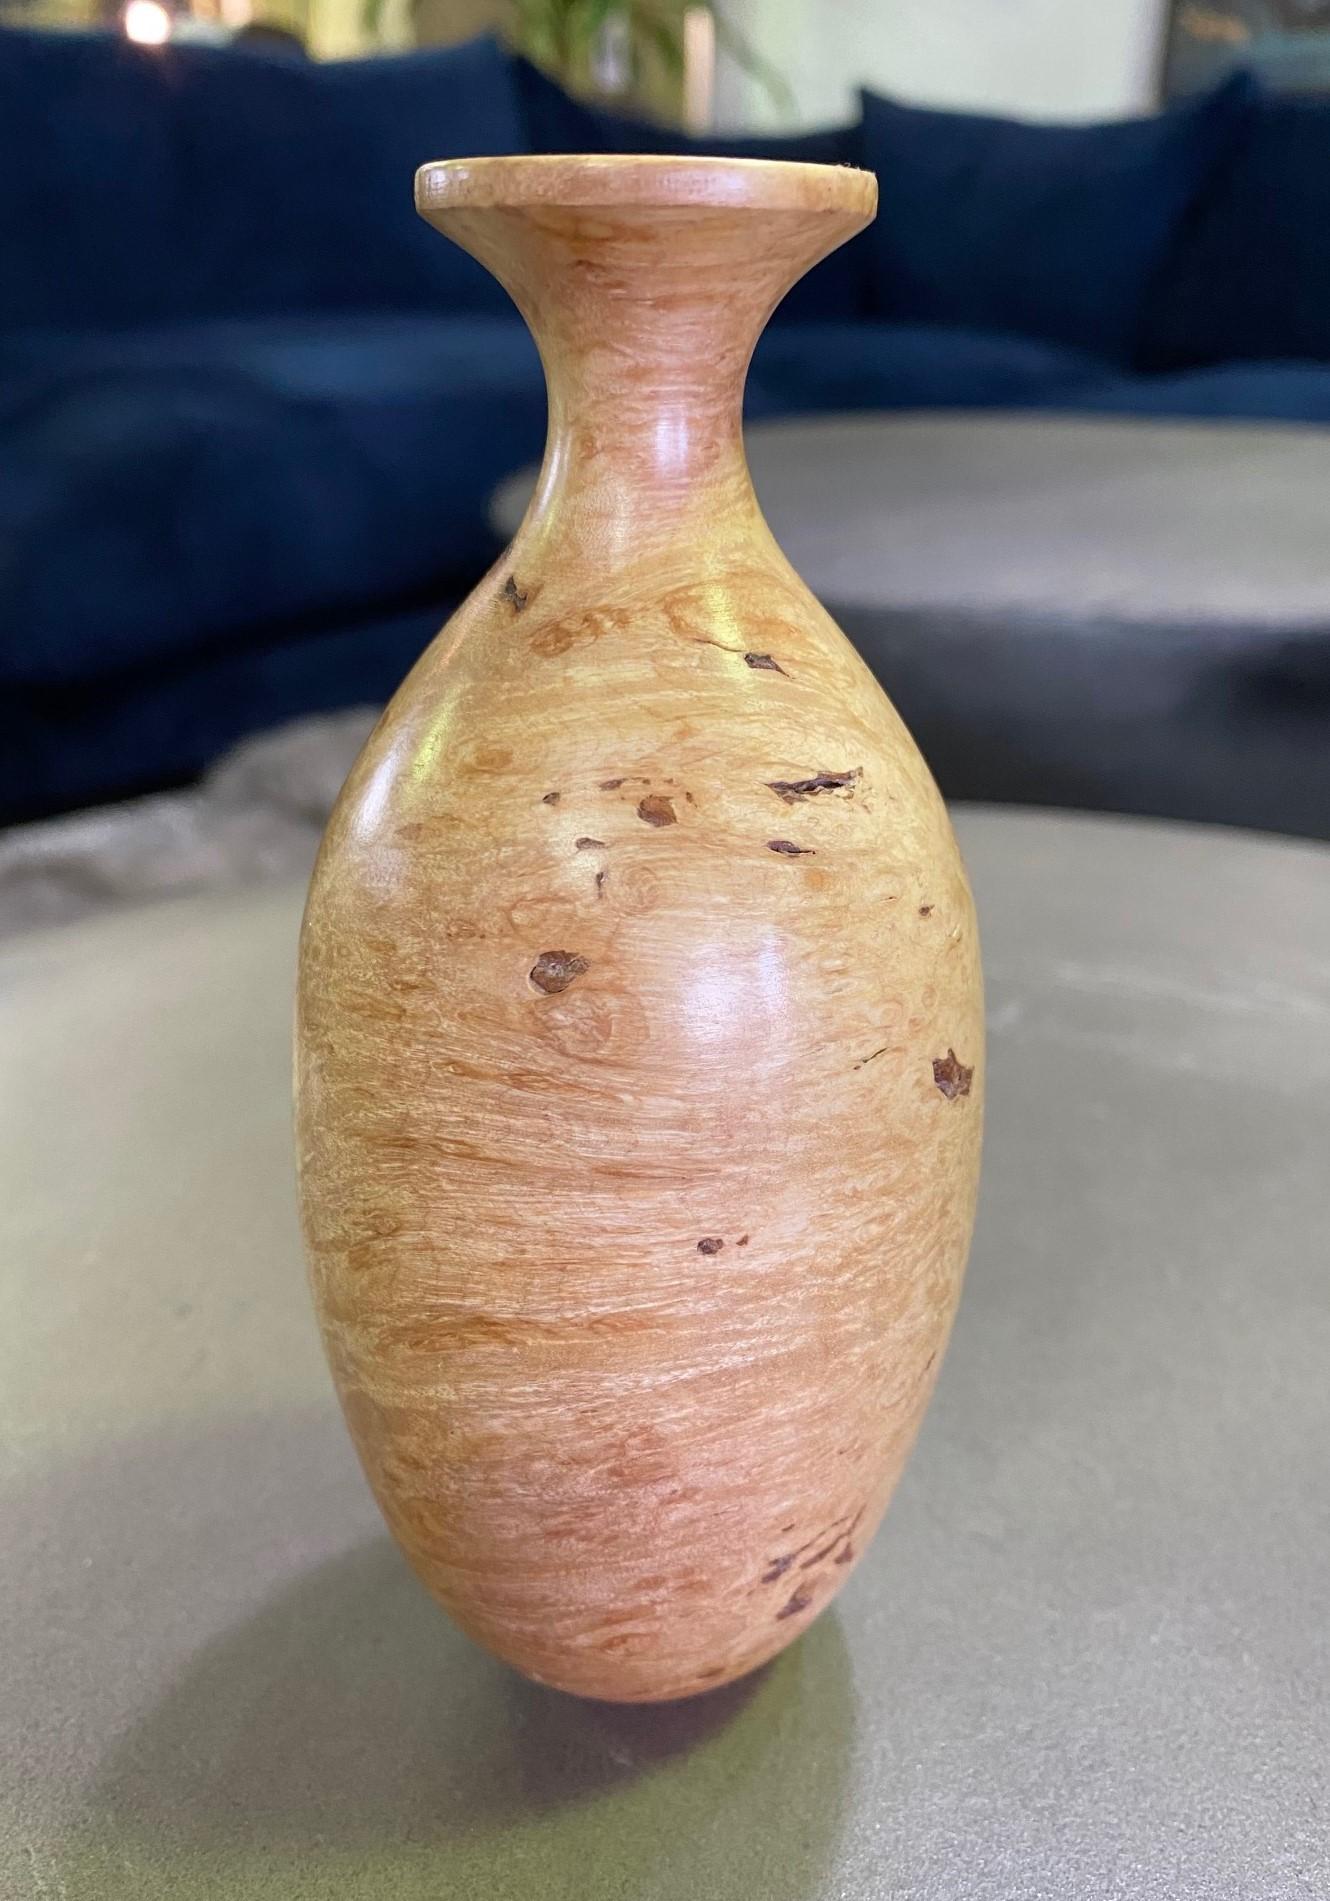 wood turning vase shapes